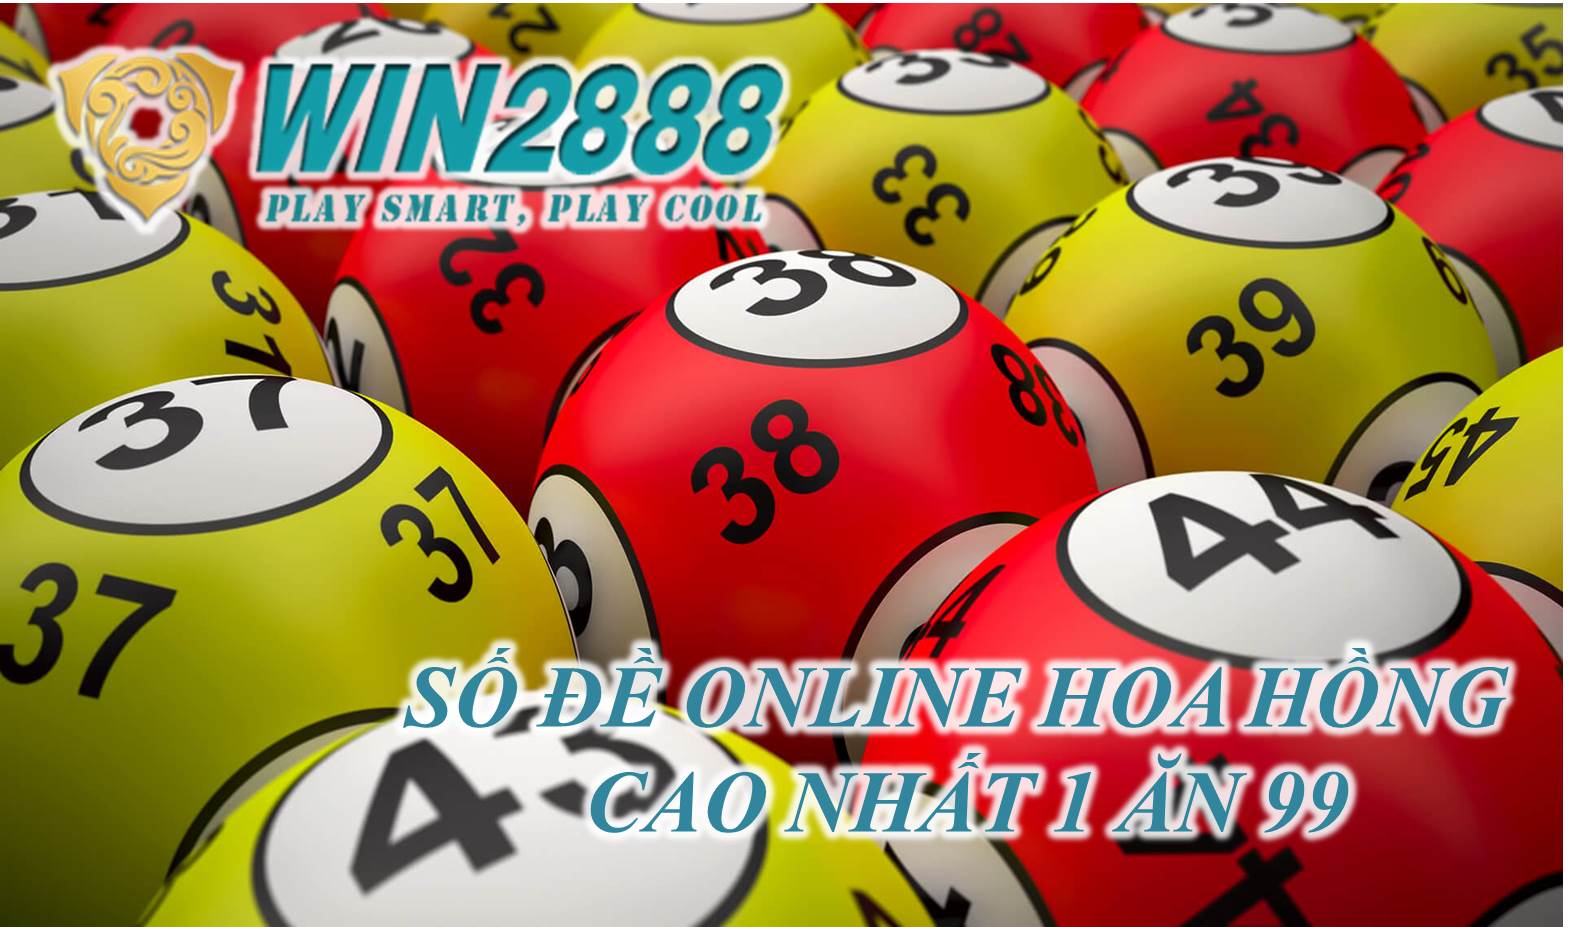 Cách đánh lô đề online trên Win2888 ăn cực cao dễ chơi dễ trúng